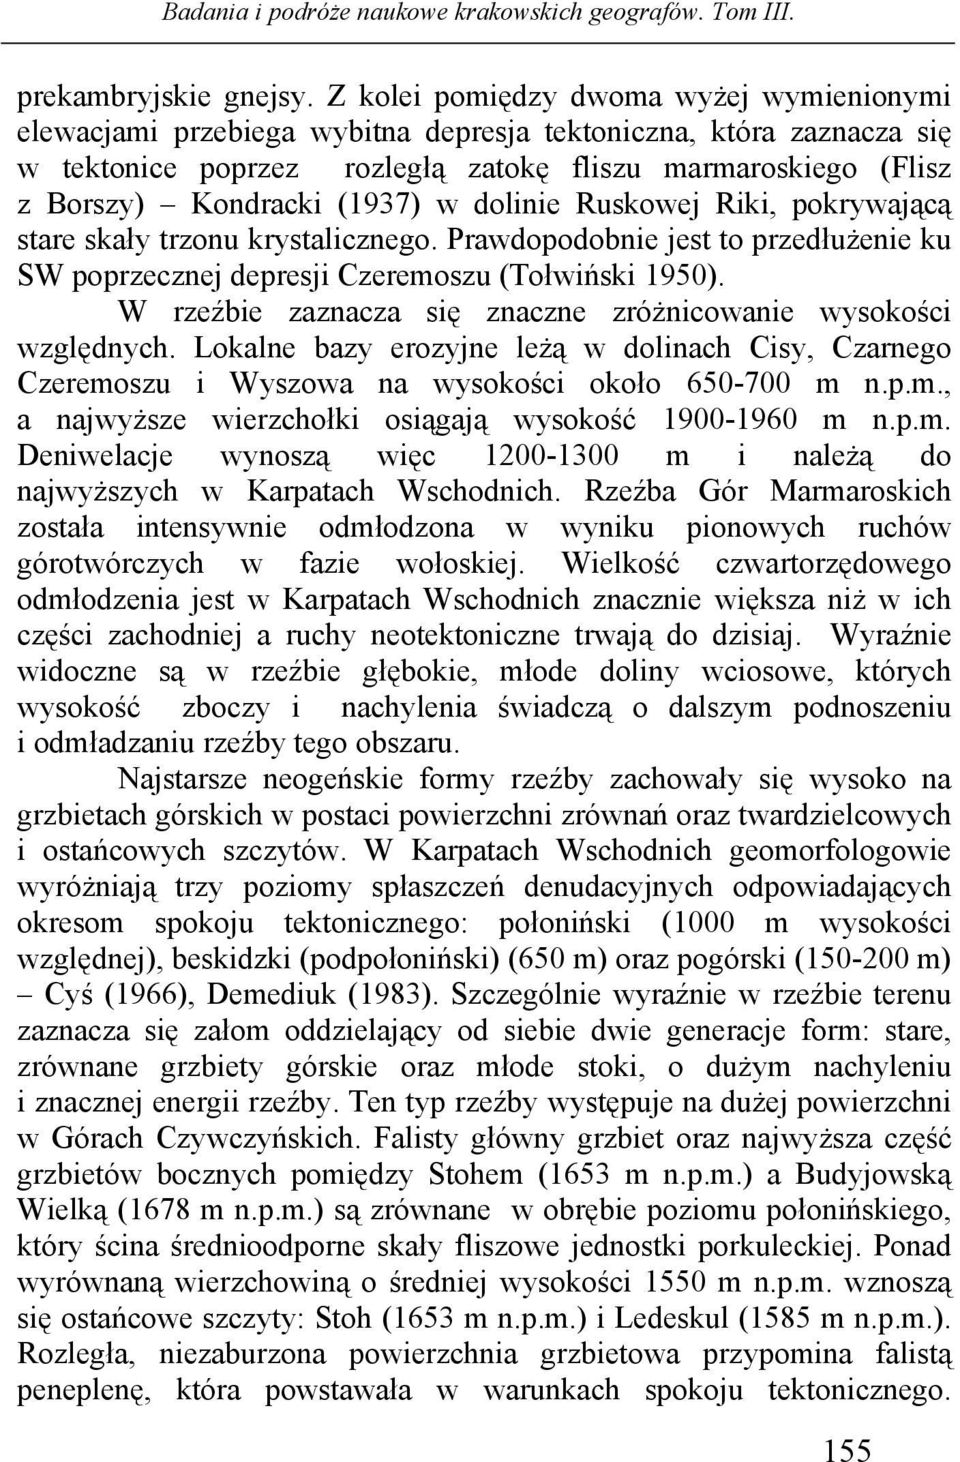 (1937) w dolinie Ruskowej Riki, pokrywającą stare skały trzonu krystalicznego. Prawdopodobnie jest to przedłużenie ku SW poprzecznej depresji Czeremoszu (Tołwiński 1950).